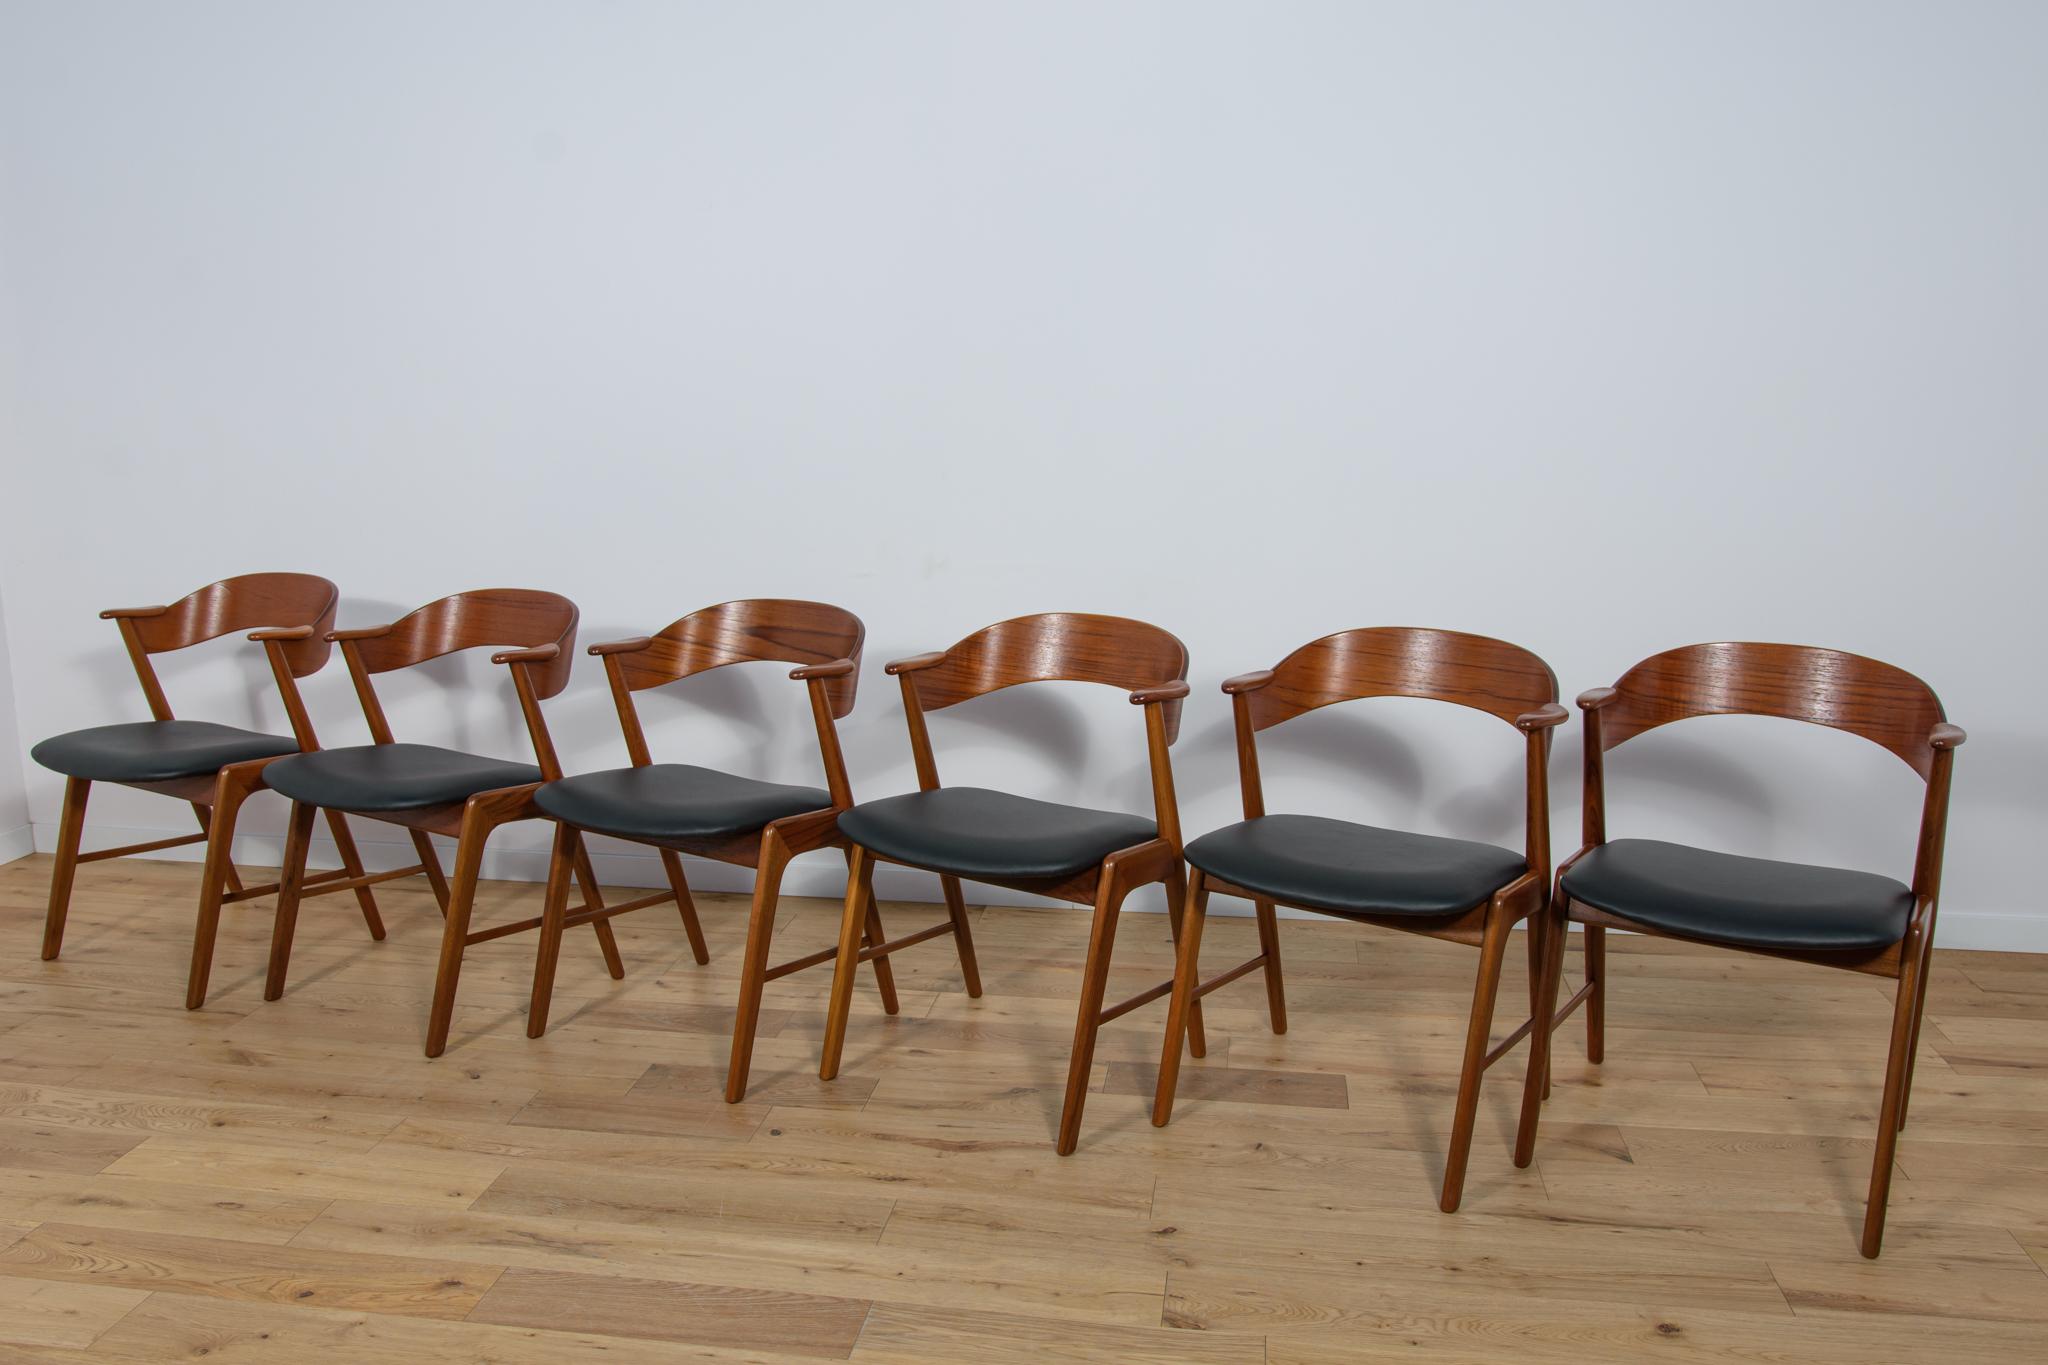 Satz von sechs Esszimmerstühlen, hergestellt von Korup Stolefabrik in Dänemark um 1960. Elegante Stühle mit einer interessanten Form A. Das Teakholz wurde von der alten Oberfläche gereinigt und mit Danish Oil behandelt. Polsterung der Innenräume